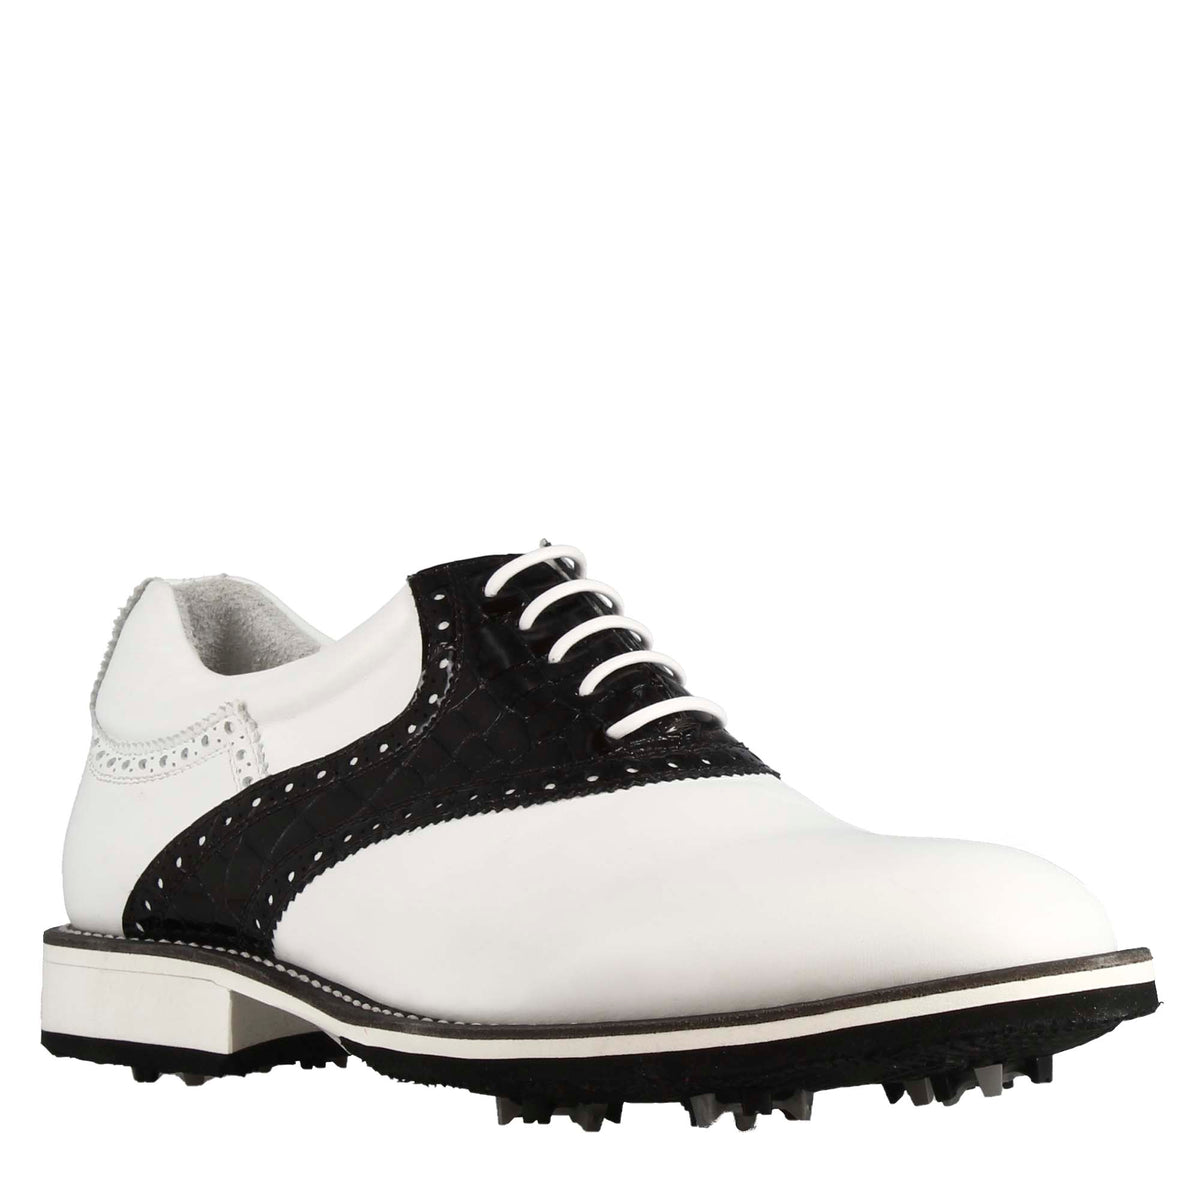 Scarpa golf artigianale da uomo in pelle colore bianco con dettagli in pelle colore nero.